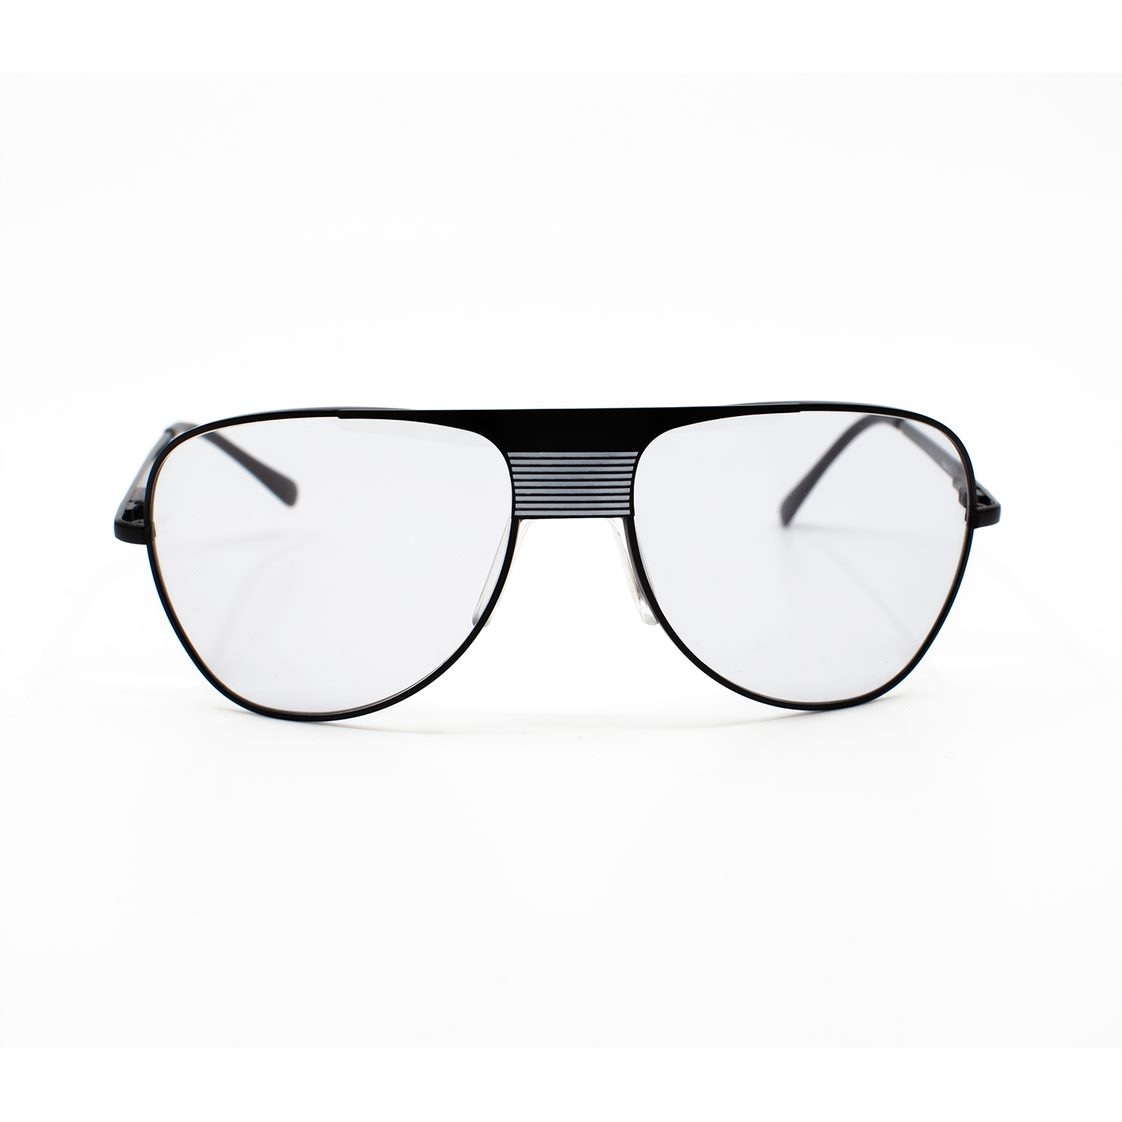 UK Trotting kjørebriller, Nova 3 modell